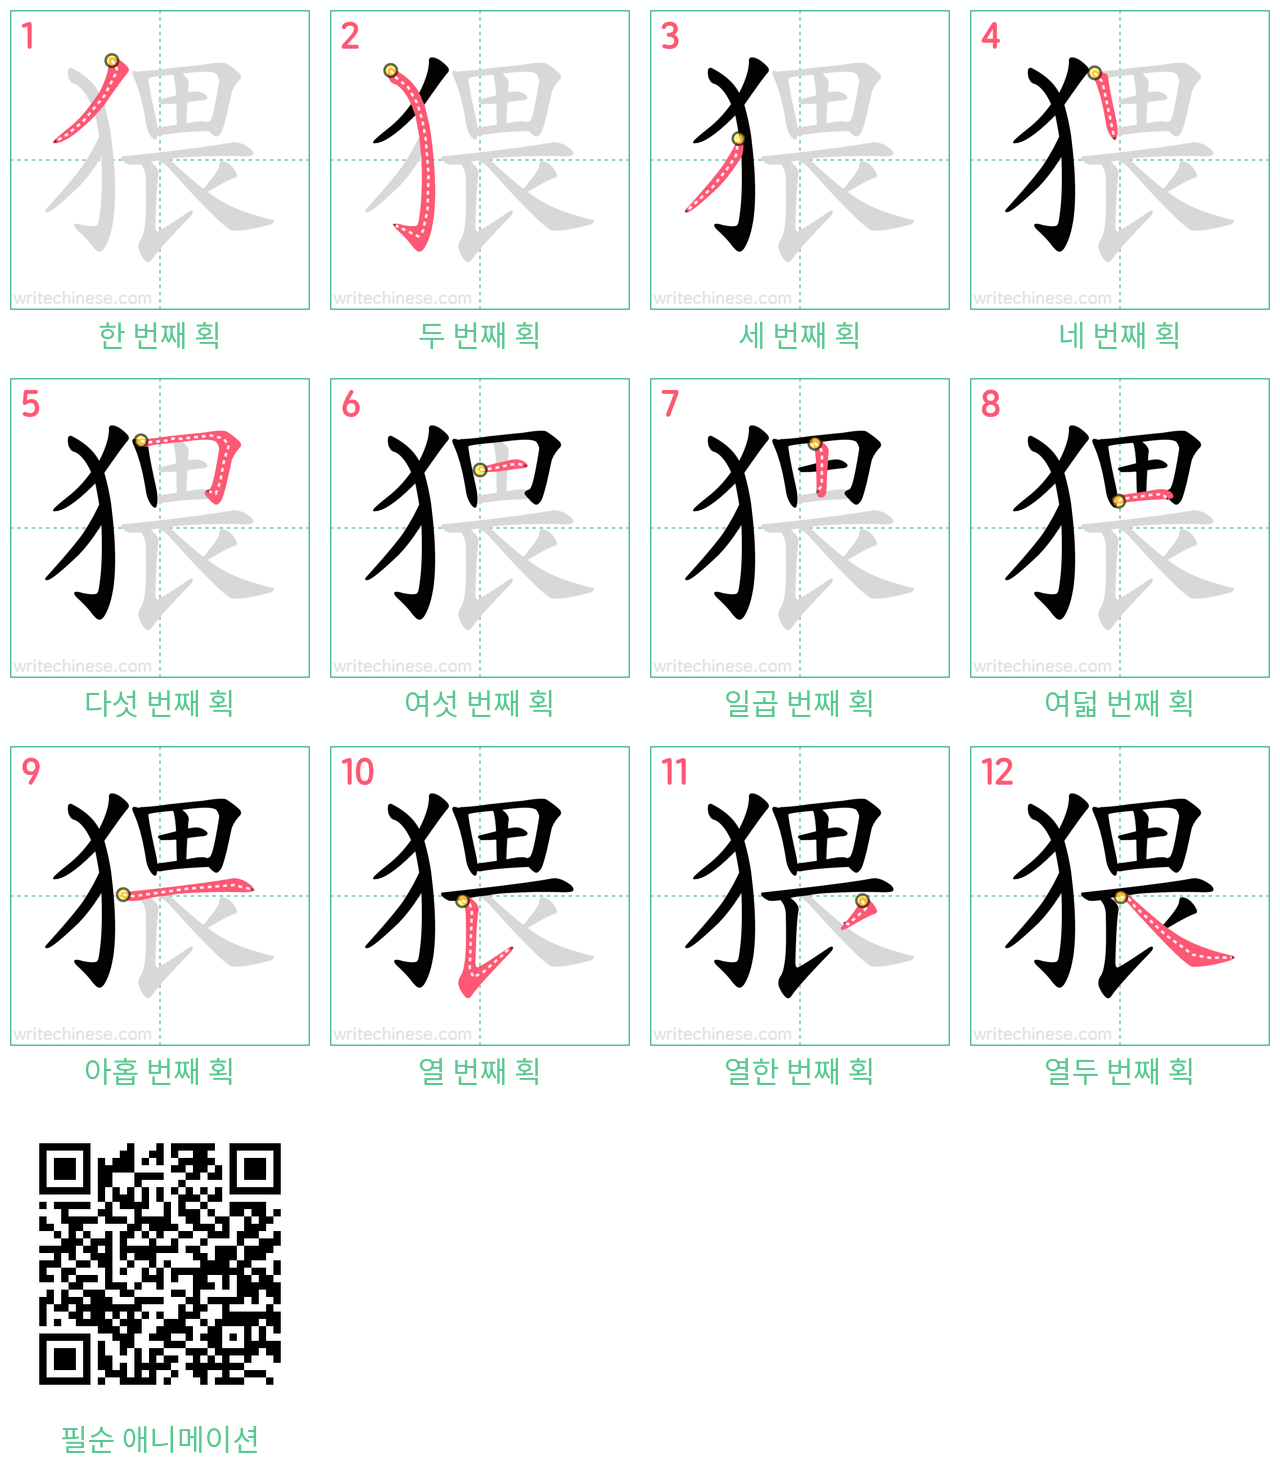 猥 step-by-step stroke order diagrams